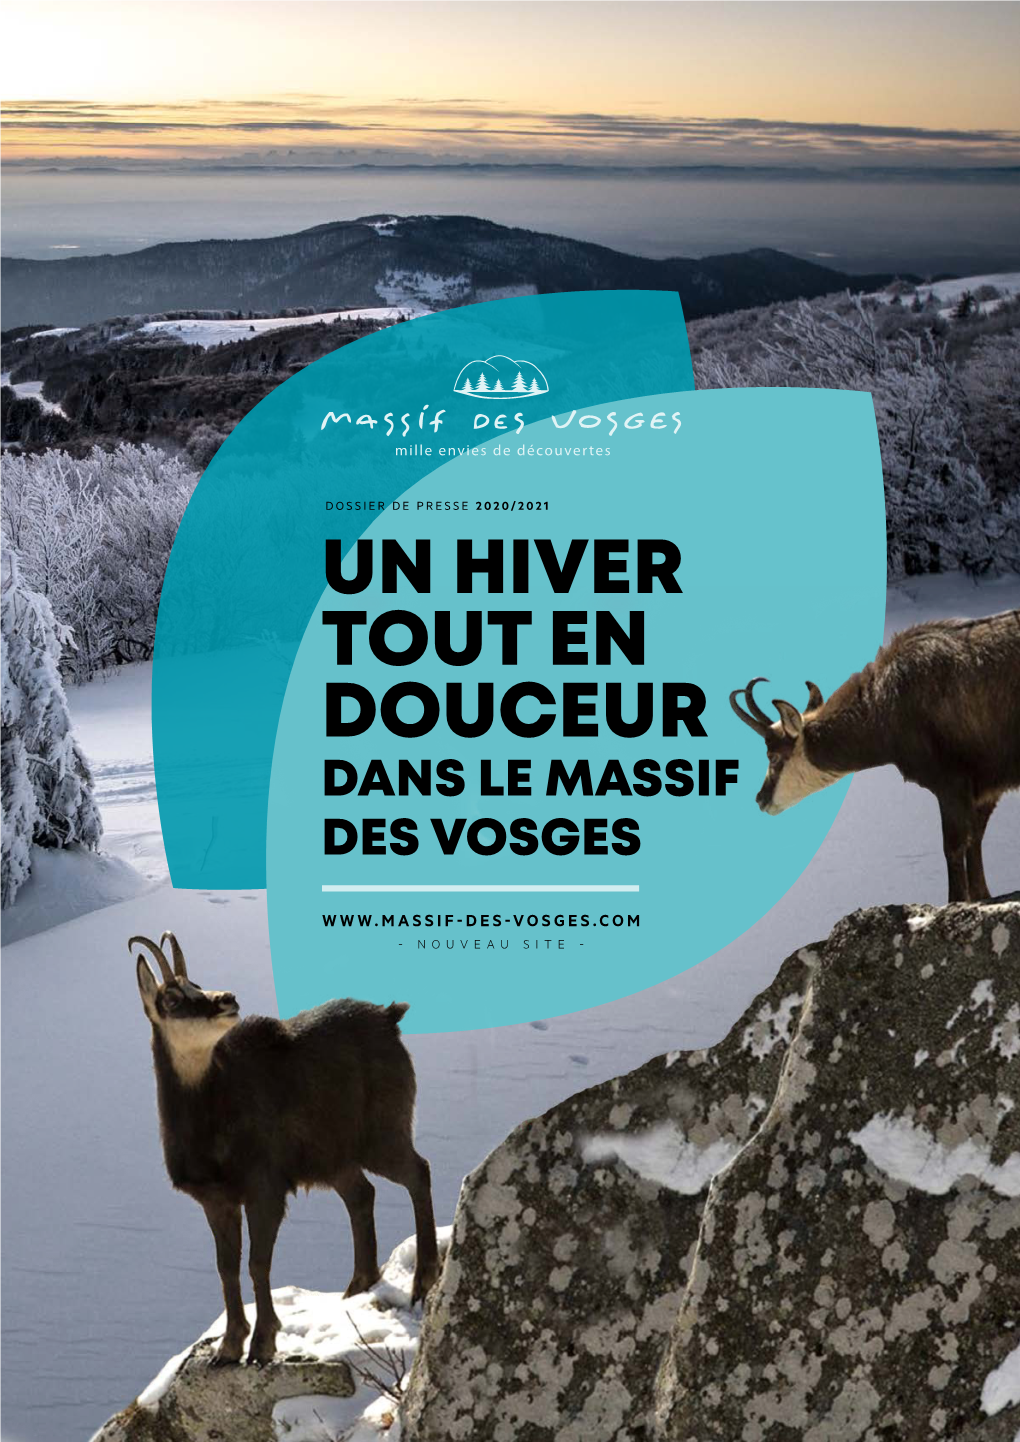 Dossier De Presse Massif Des Vosges